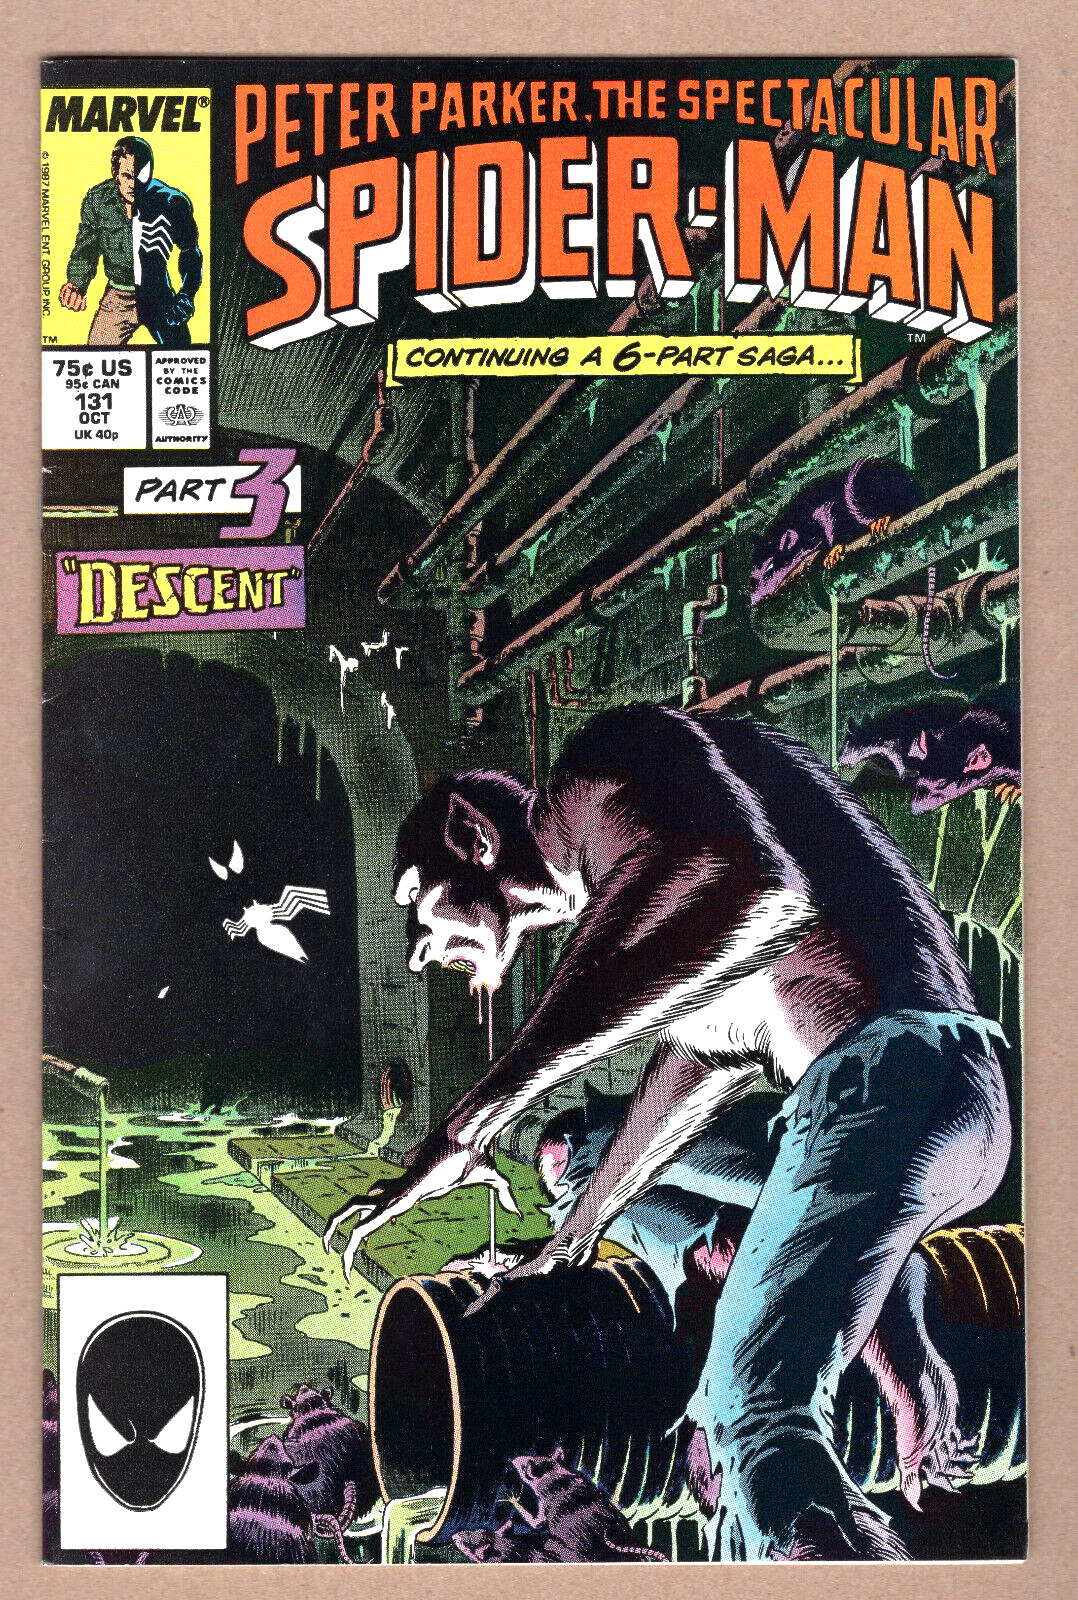 SPECTACULAR SPIDER-MAN #131 VF/NM Kraven's Last Hunt pt3 ZECK  1987 Marvel c2